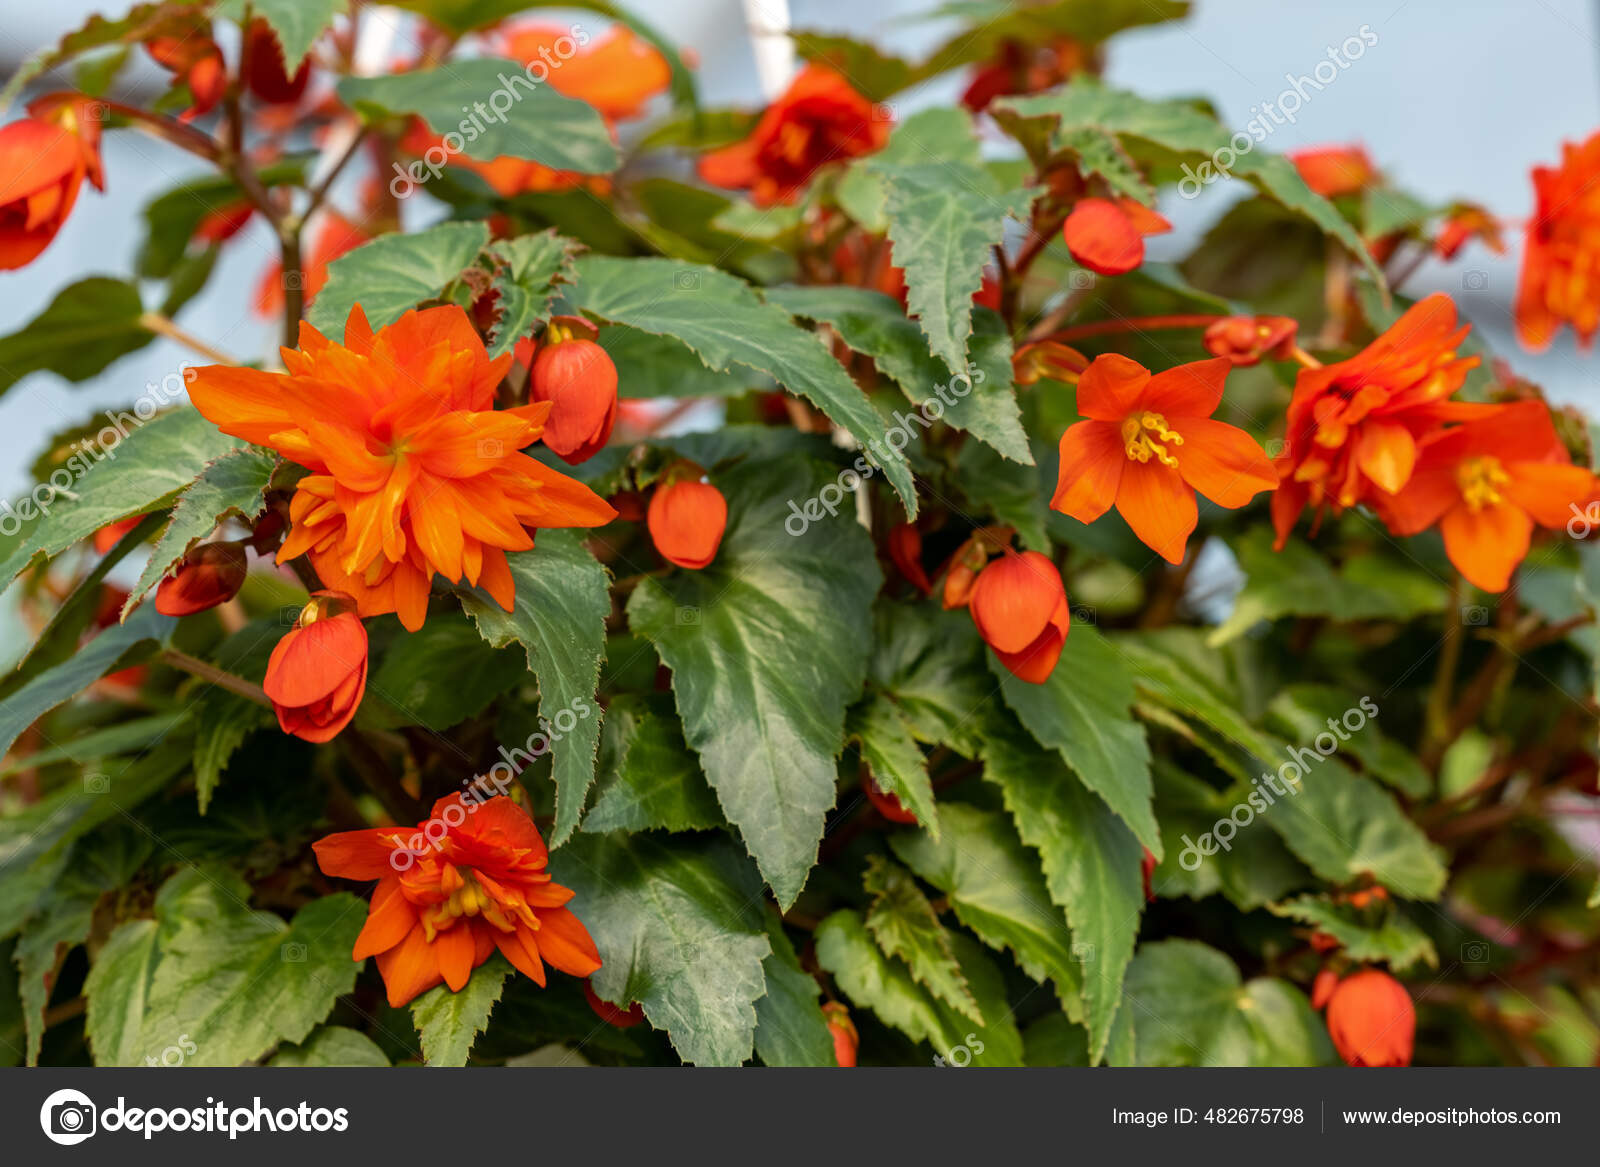 anaranjadas de stock, imágenes de Begonias anaranjadas sin royalties |